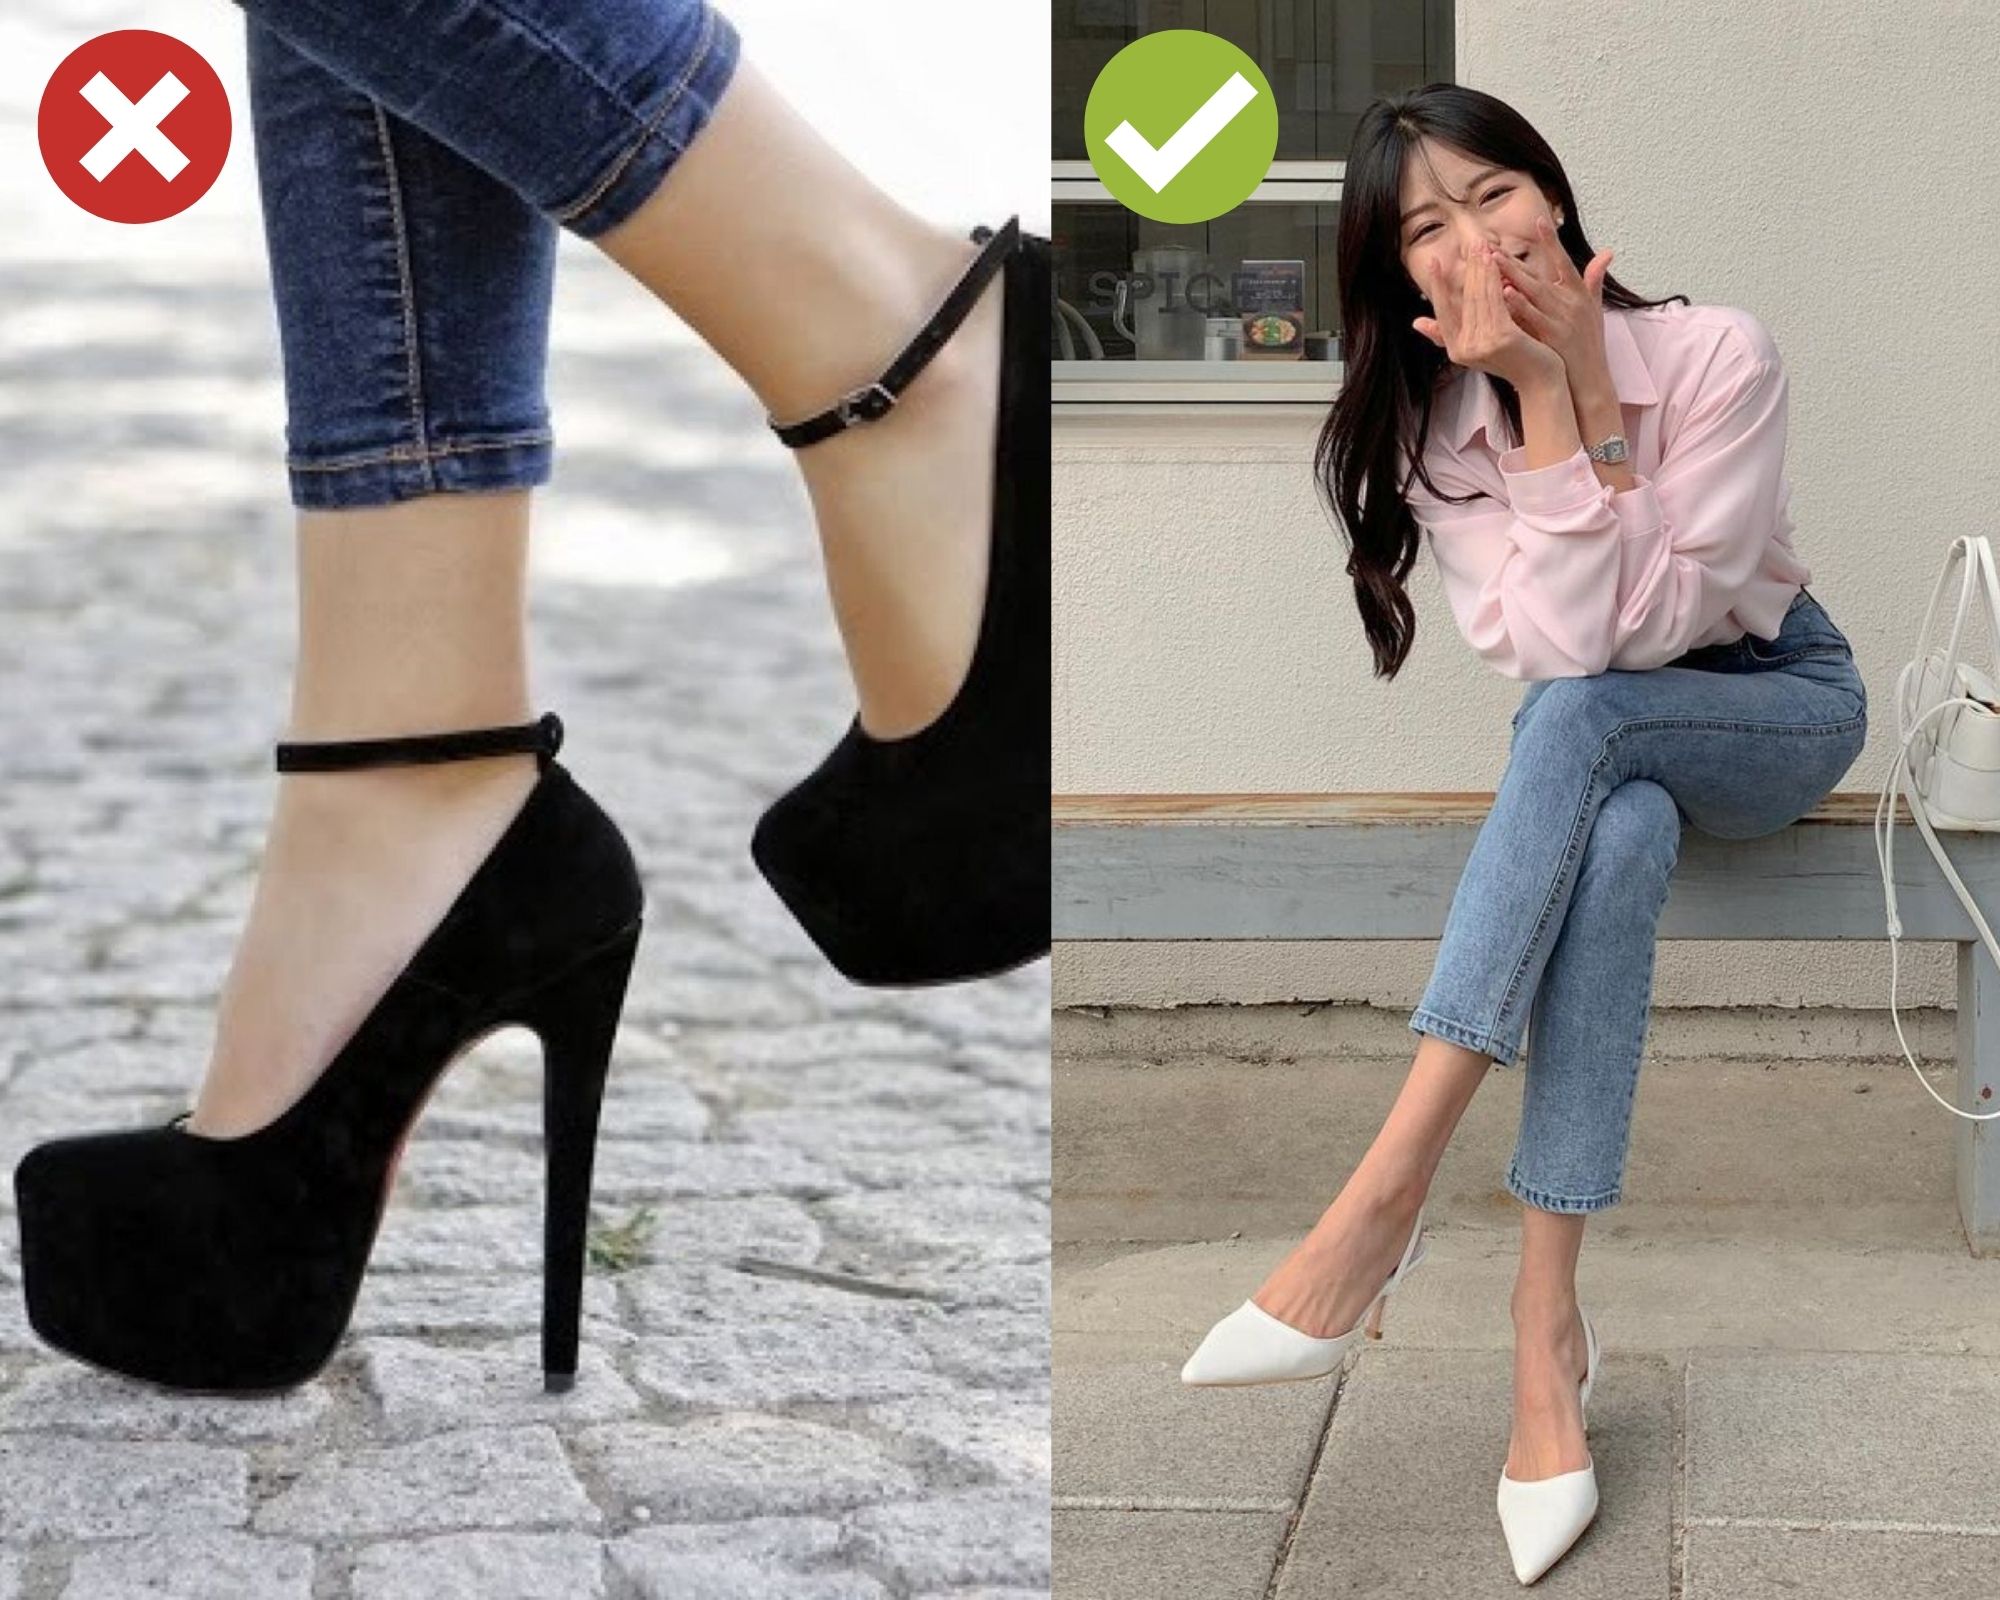 Giày sành điệu là lựa chọn không thể thiếu cho những ai yêu thích phong cách và thời trang. Với một đôi giày sành điệu, bạn không chỉ tự tin hơn mà còn gây ấn tượng với những người xung quanh. Hãy xem những hình ảnh về giày sành điệu để tìm cho mình một đôi giày phù hợp và ấn tượng nhất!